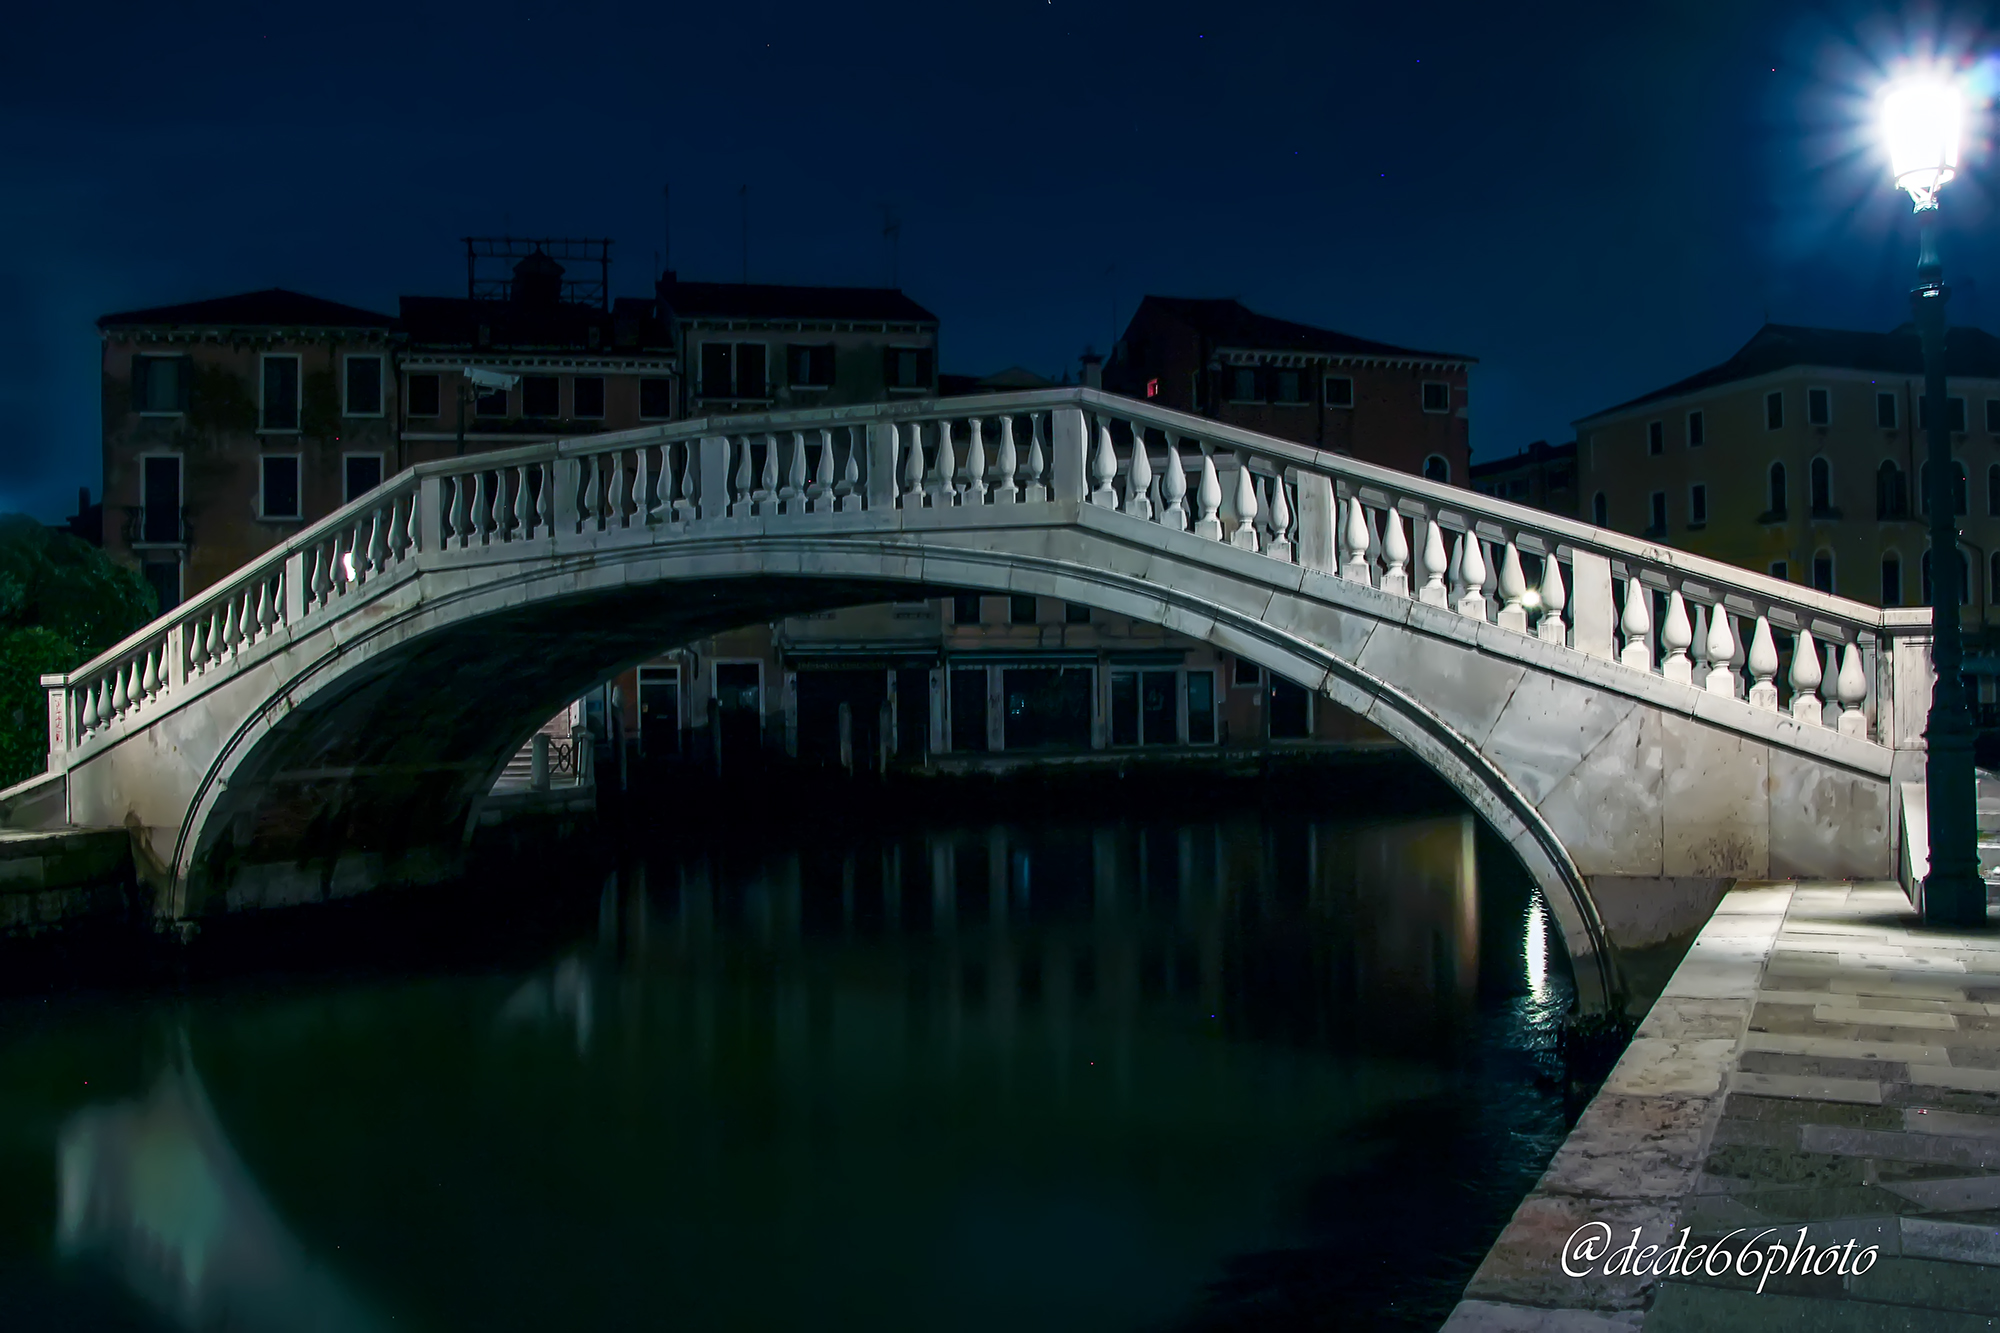 Bridge in the night....